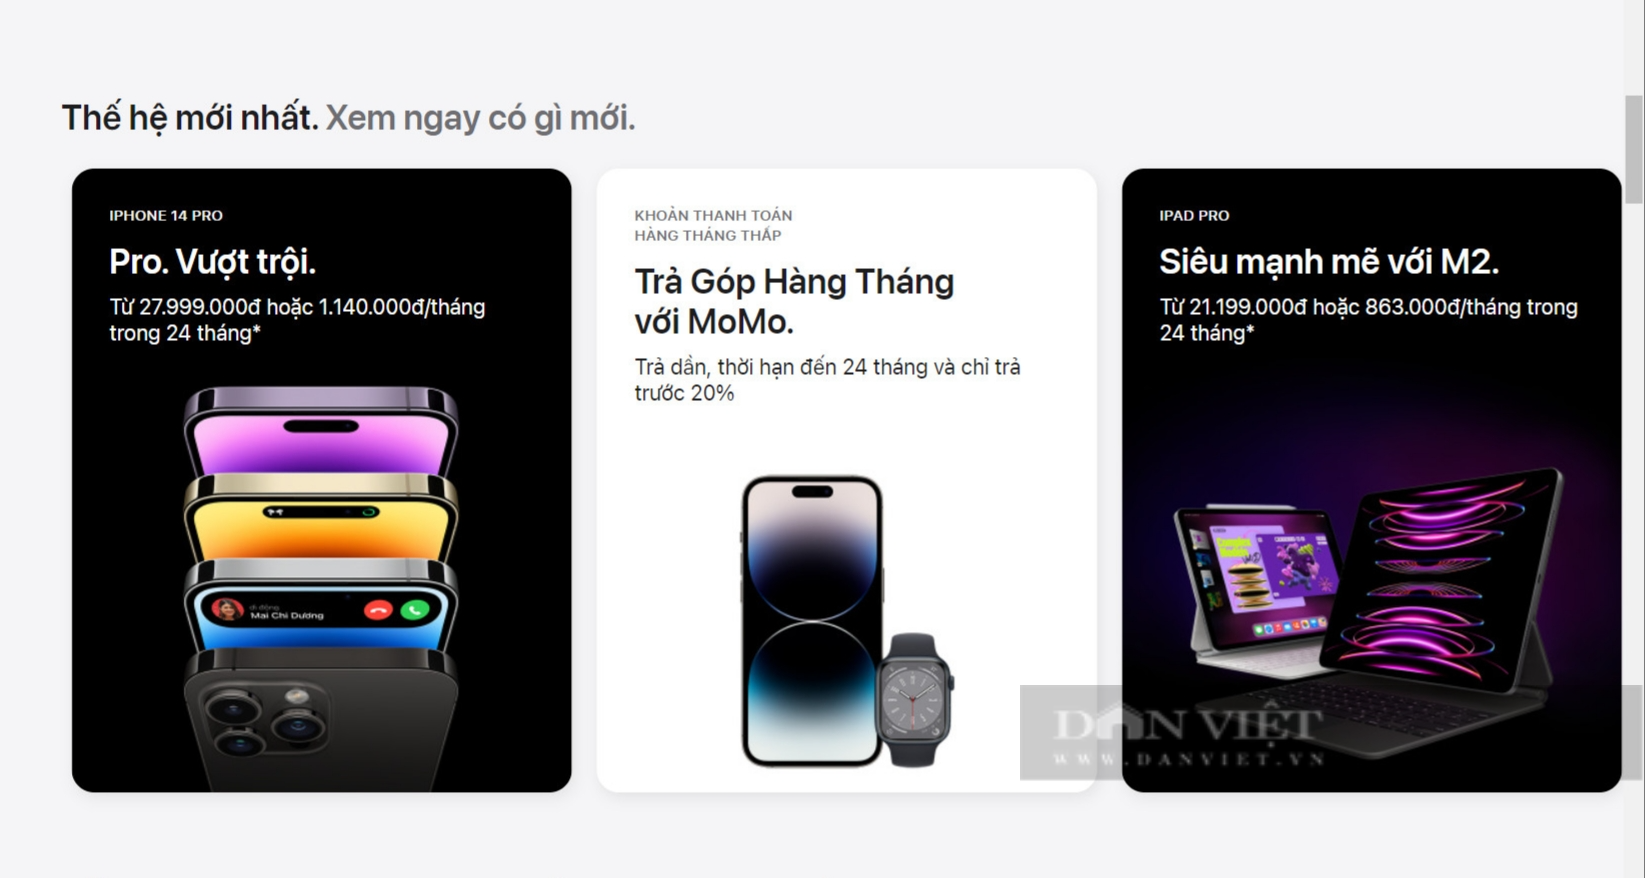 Apple Store chính thức mở bán: Giá cả chênh lệch ra sao so với nhà phân phối Việt Nam? - Ảnh 2.